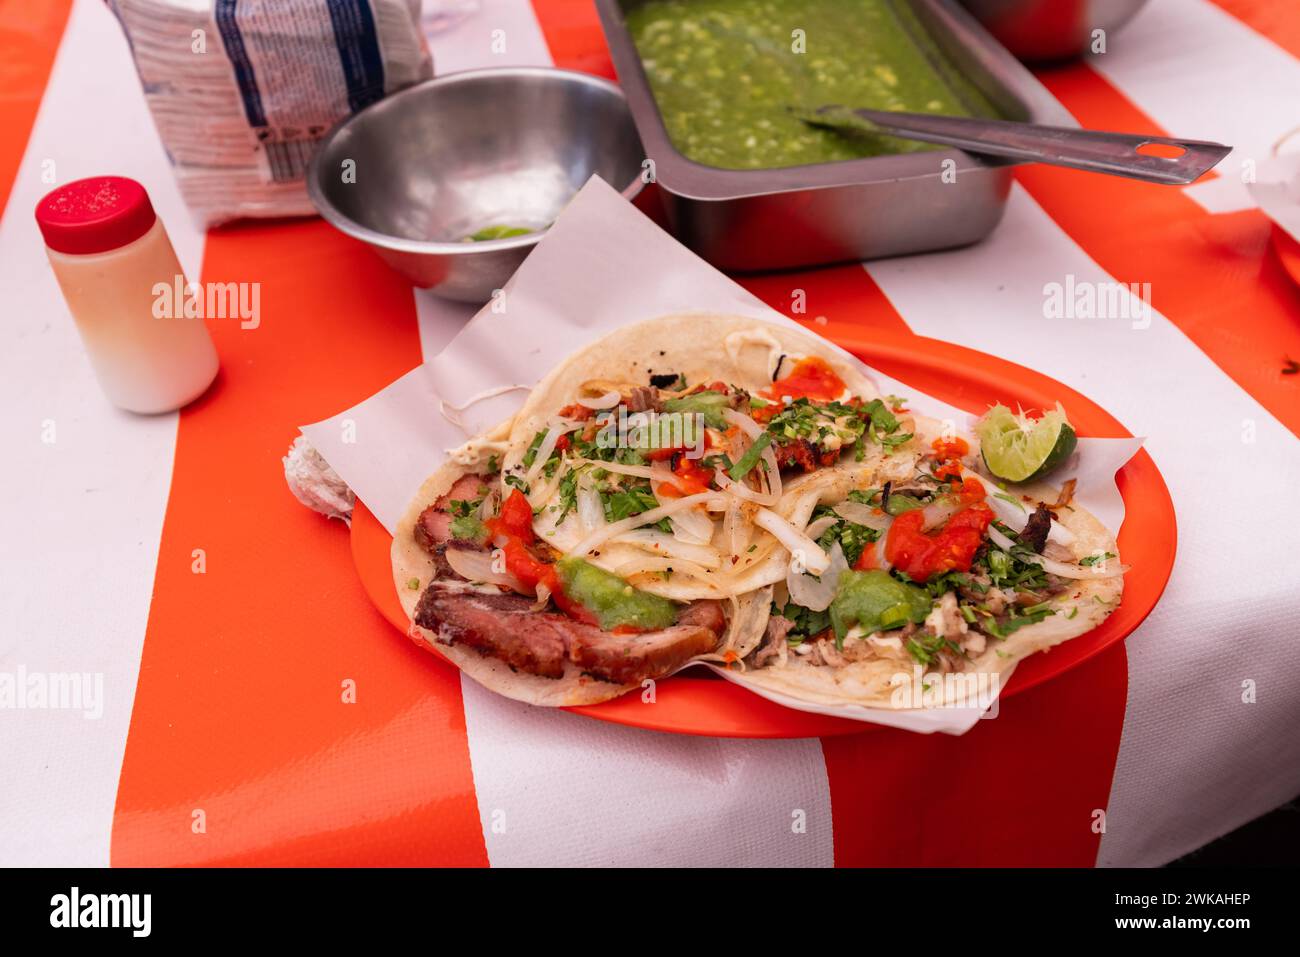 Viziatevi con le delizie saporite della scena Street food di città del Messico, dove ogni taco offre un assaggio saporito dell'autentica cucina messicana Foto Stock